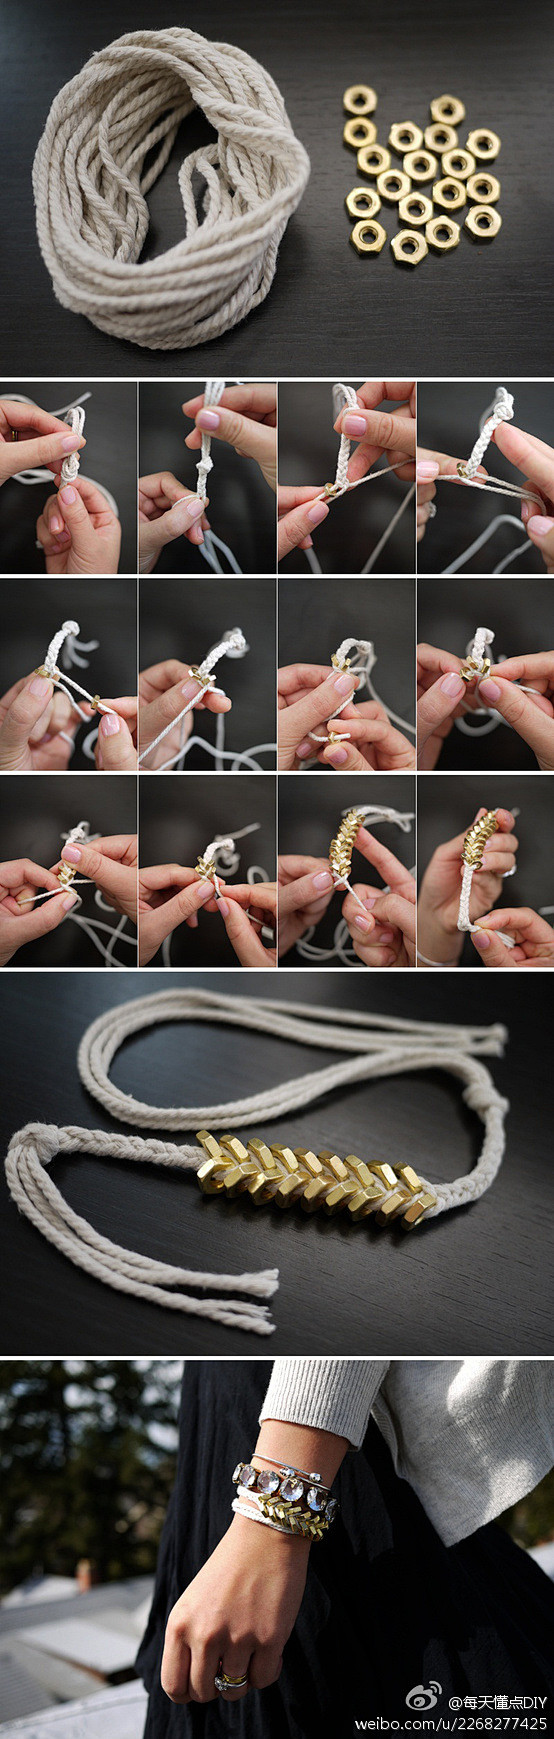 六角螺丝编织手链